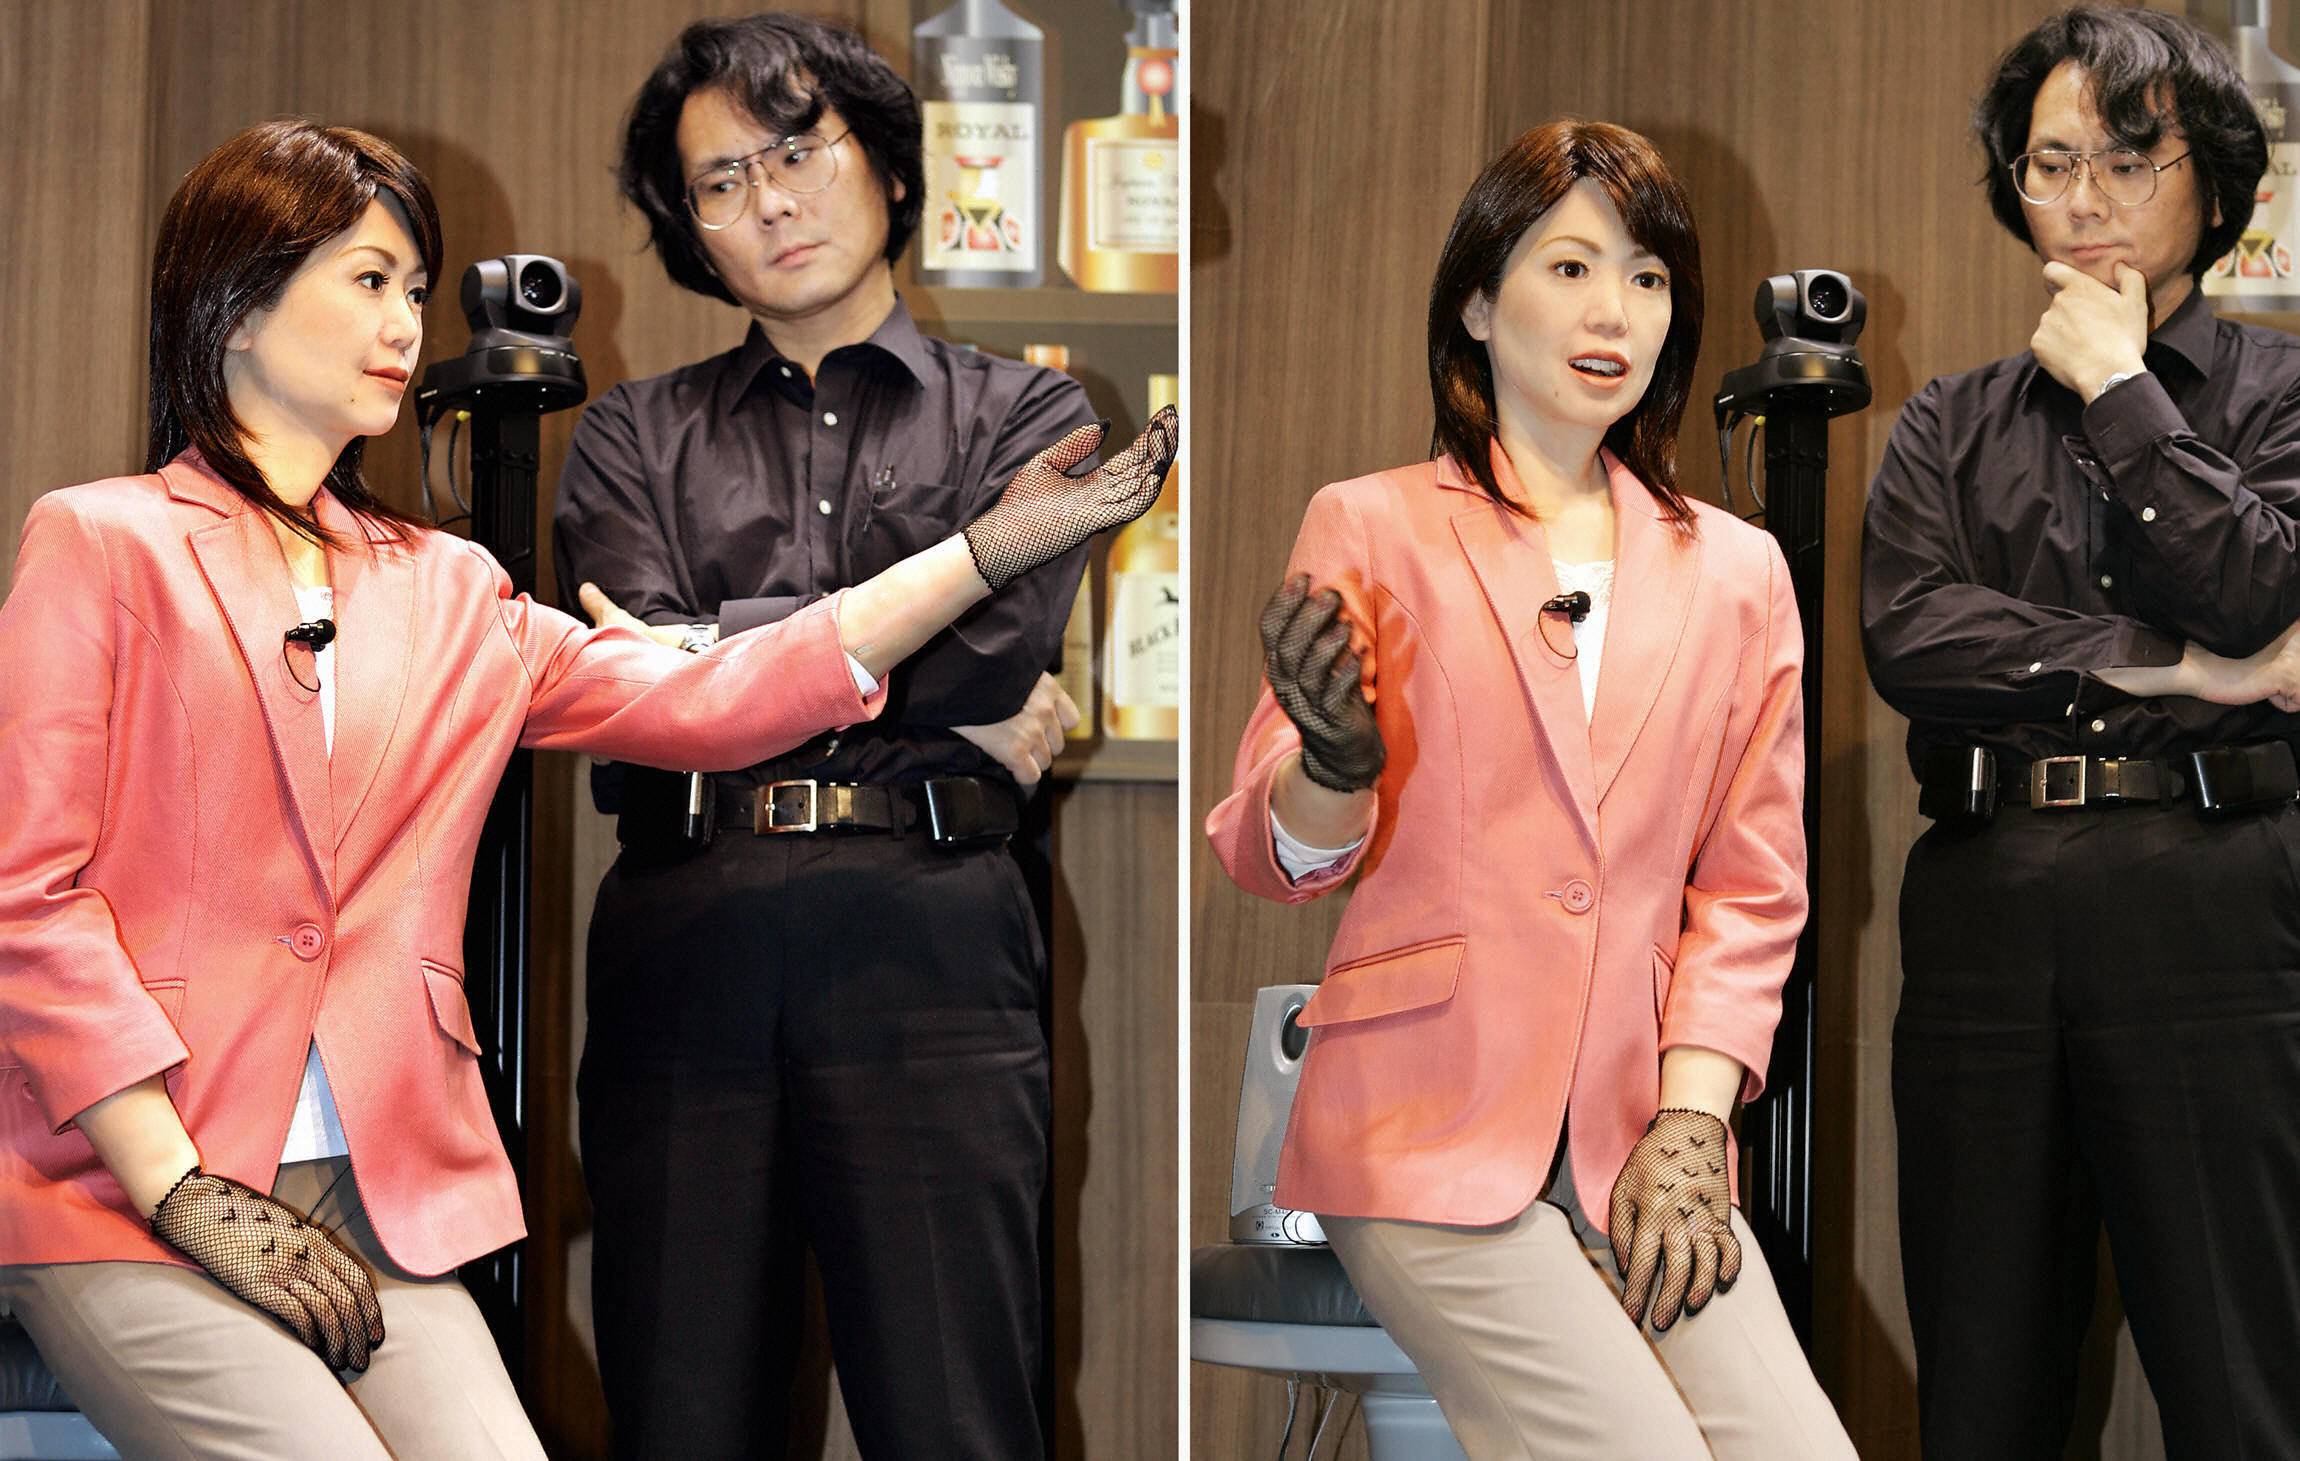 Android wife. Repliee q2. Японские роботы похожие на людей. Японский робот человек. Человекоподобные роботы в Японии.